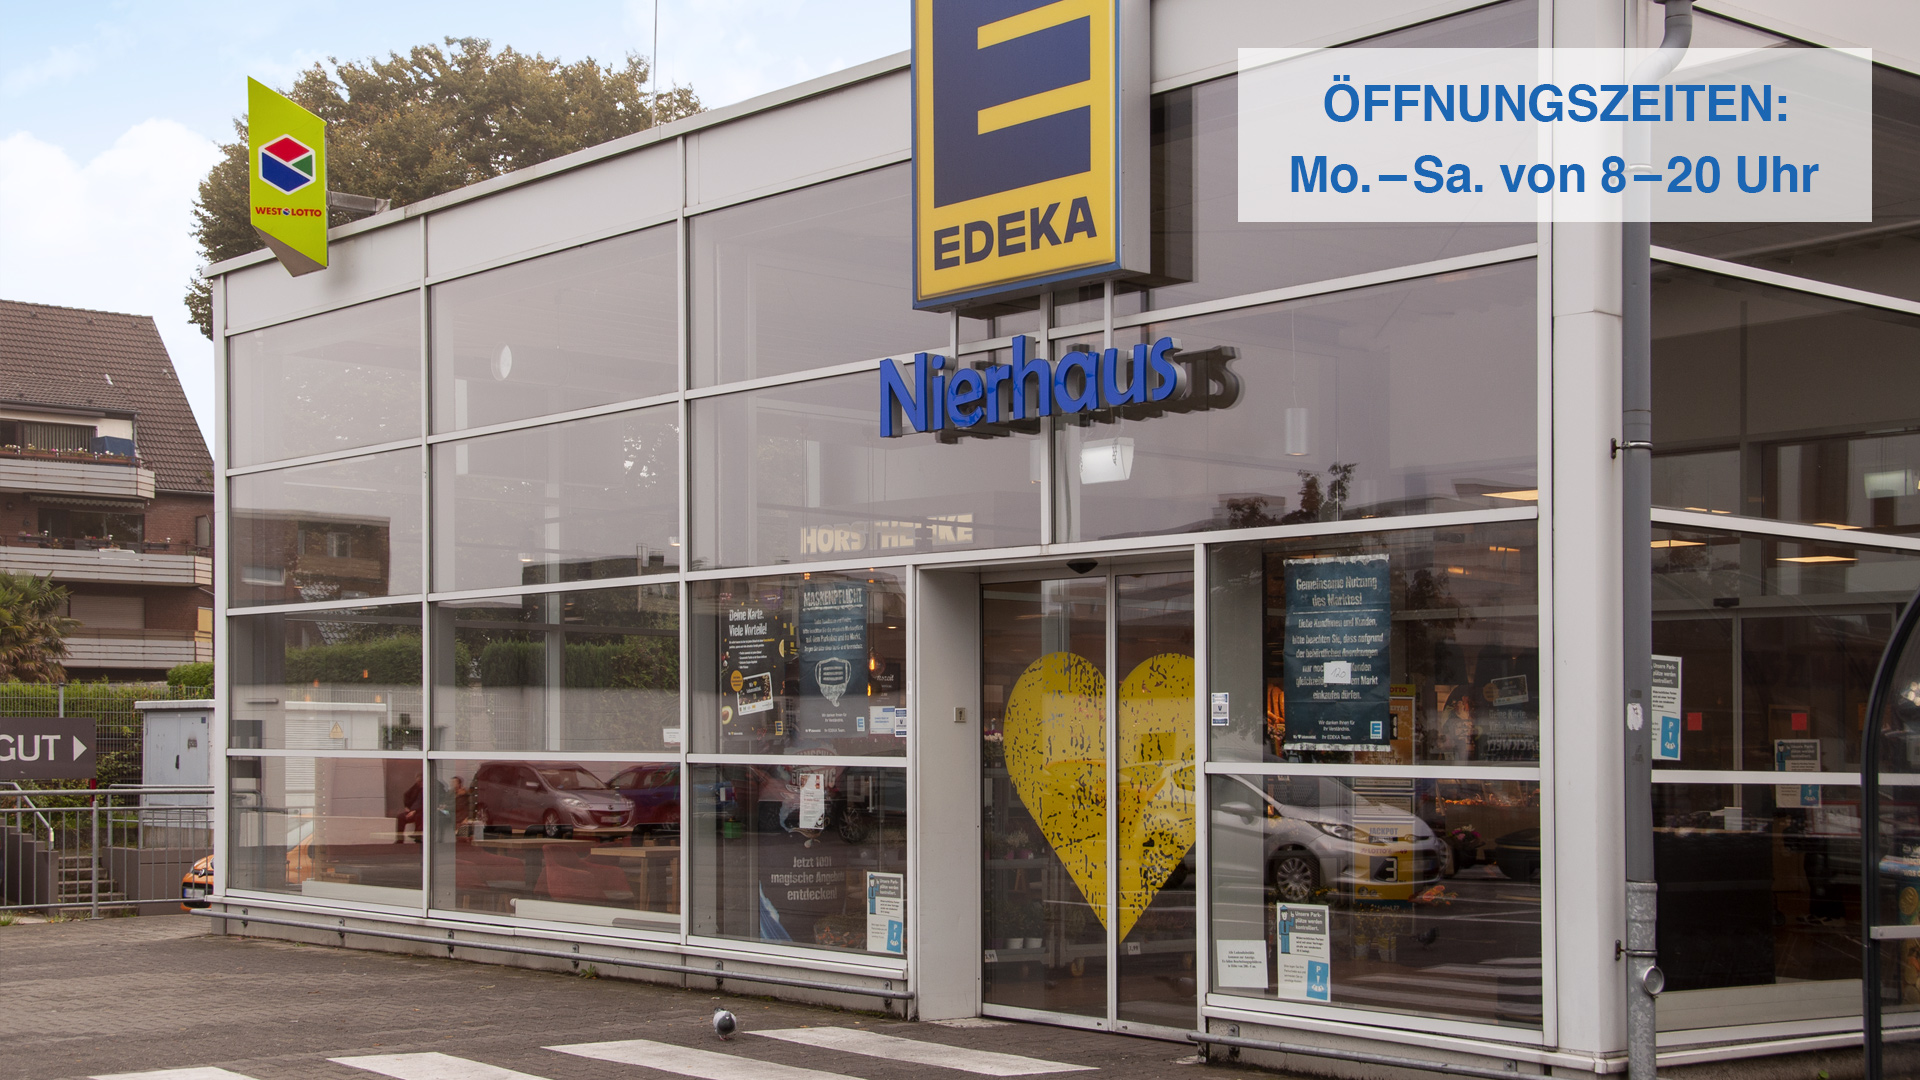 Startseite Header EDEKA Nierhaus Eingang mit Öffnungszeiten oben rechts